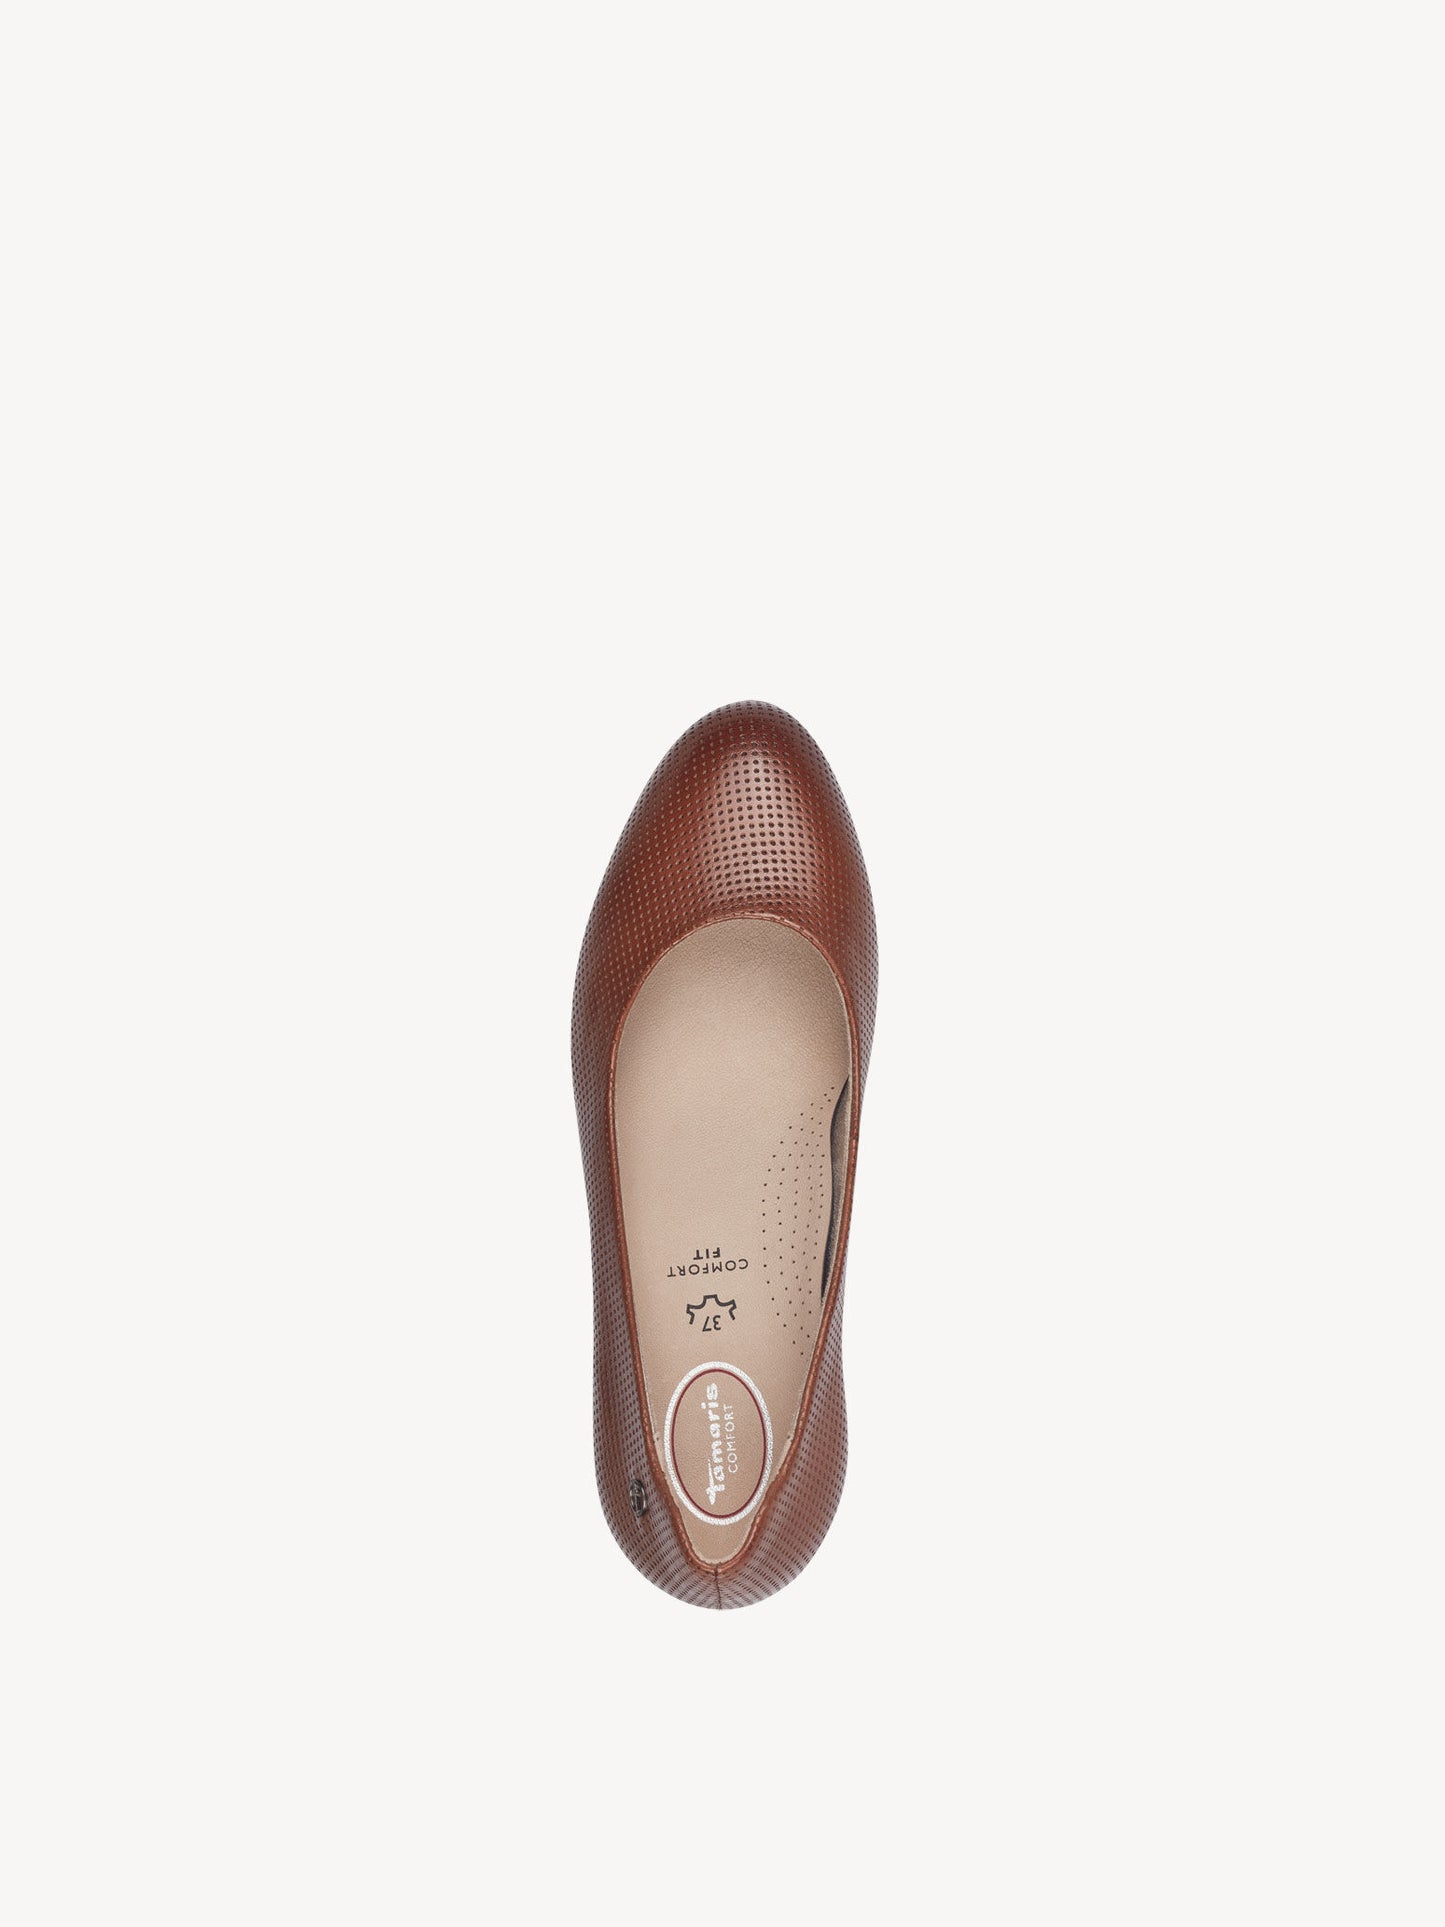 Tamaris Women's 8-82401-42 Leather Pump Shoes Cognac Brown